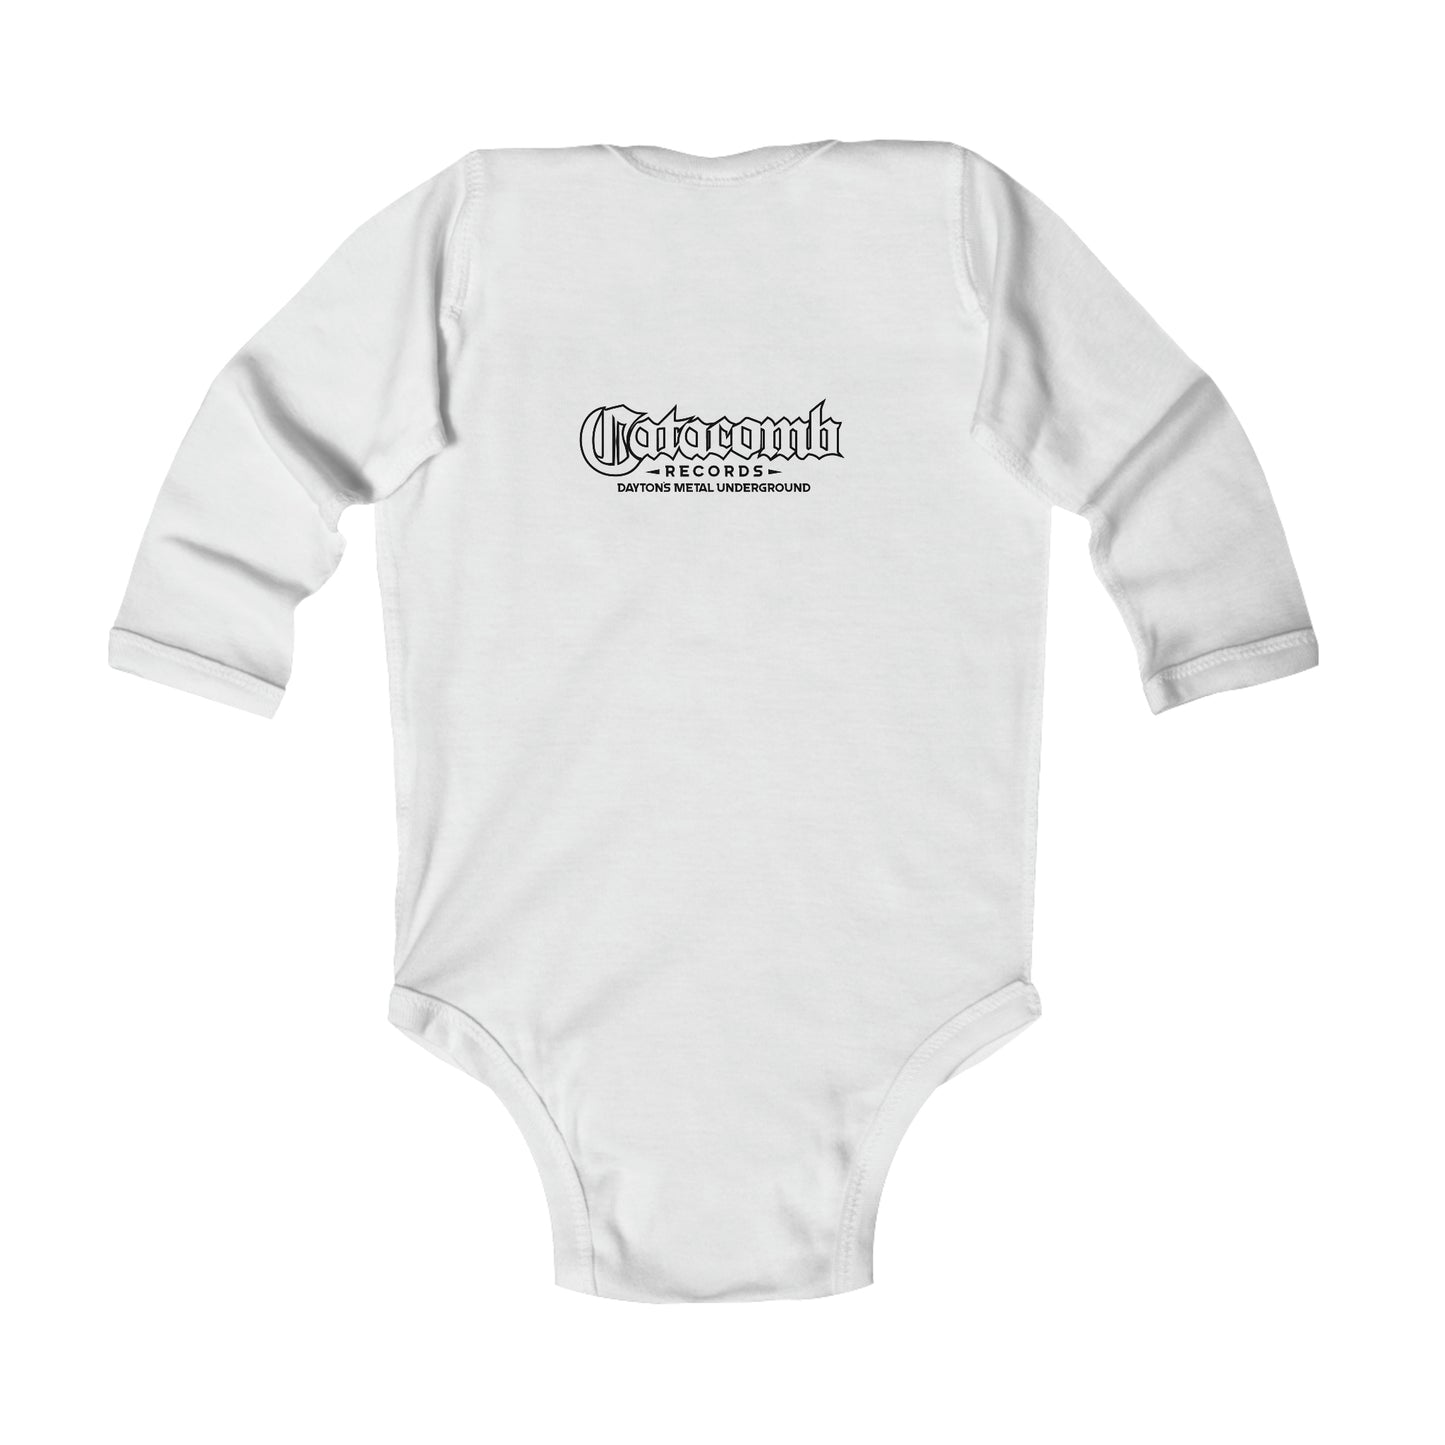 Infant Long Sleeve Bodysuit